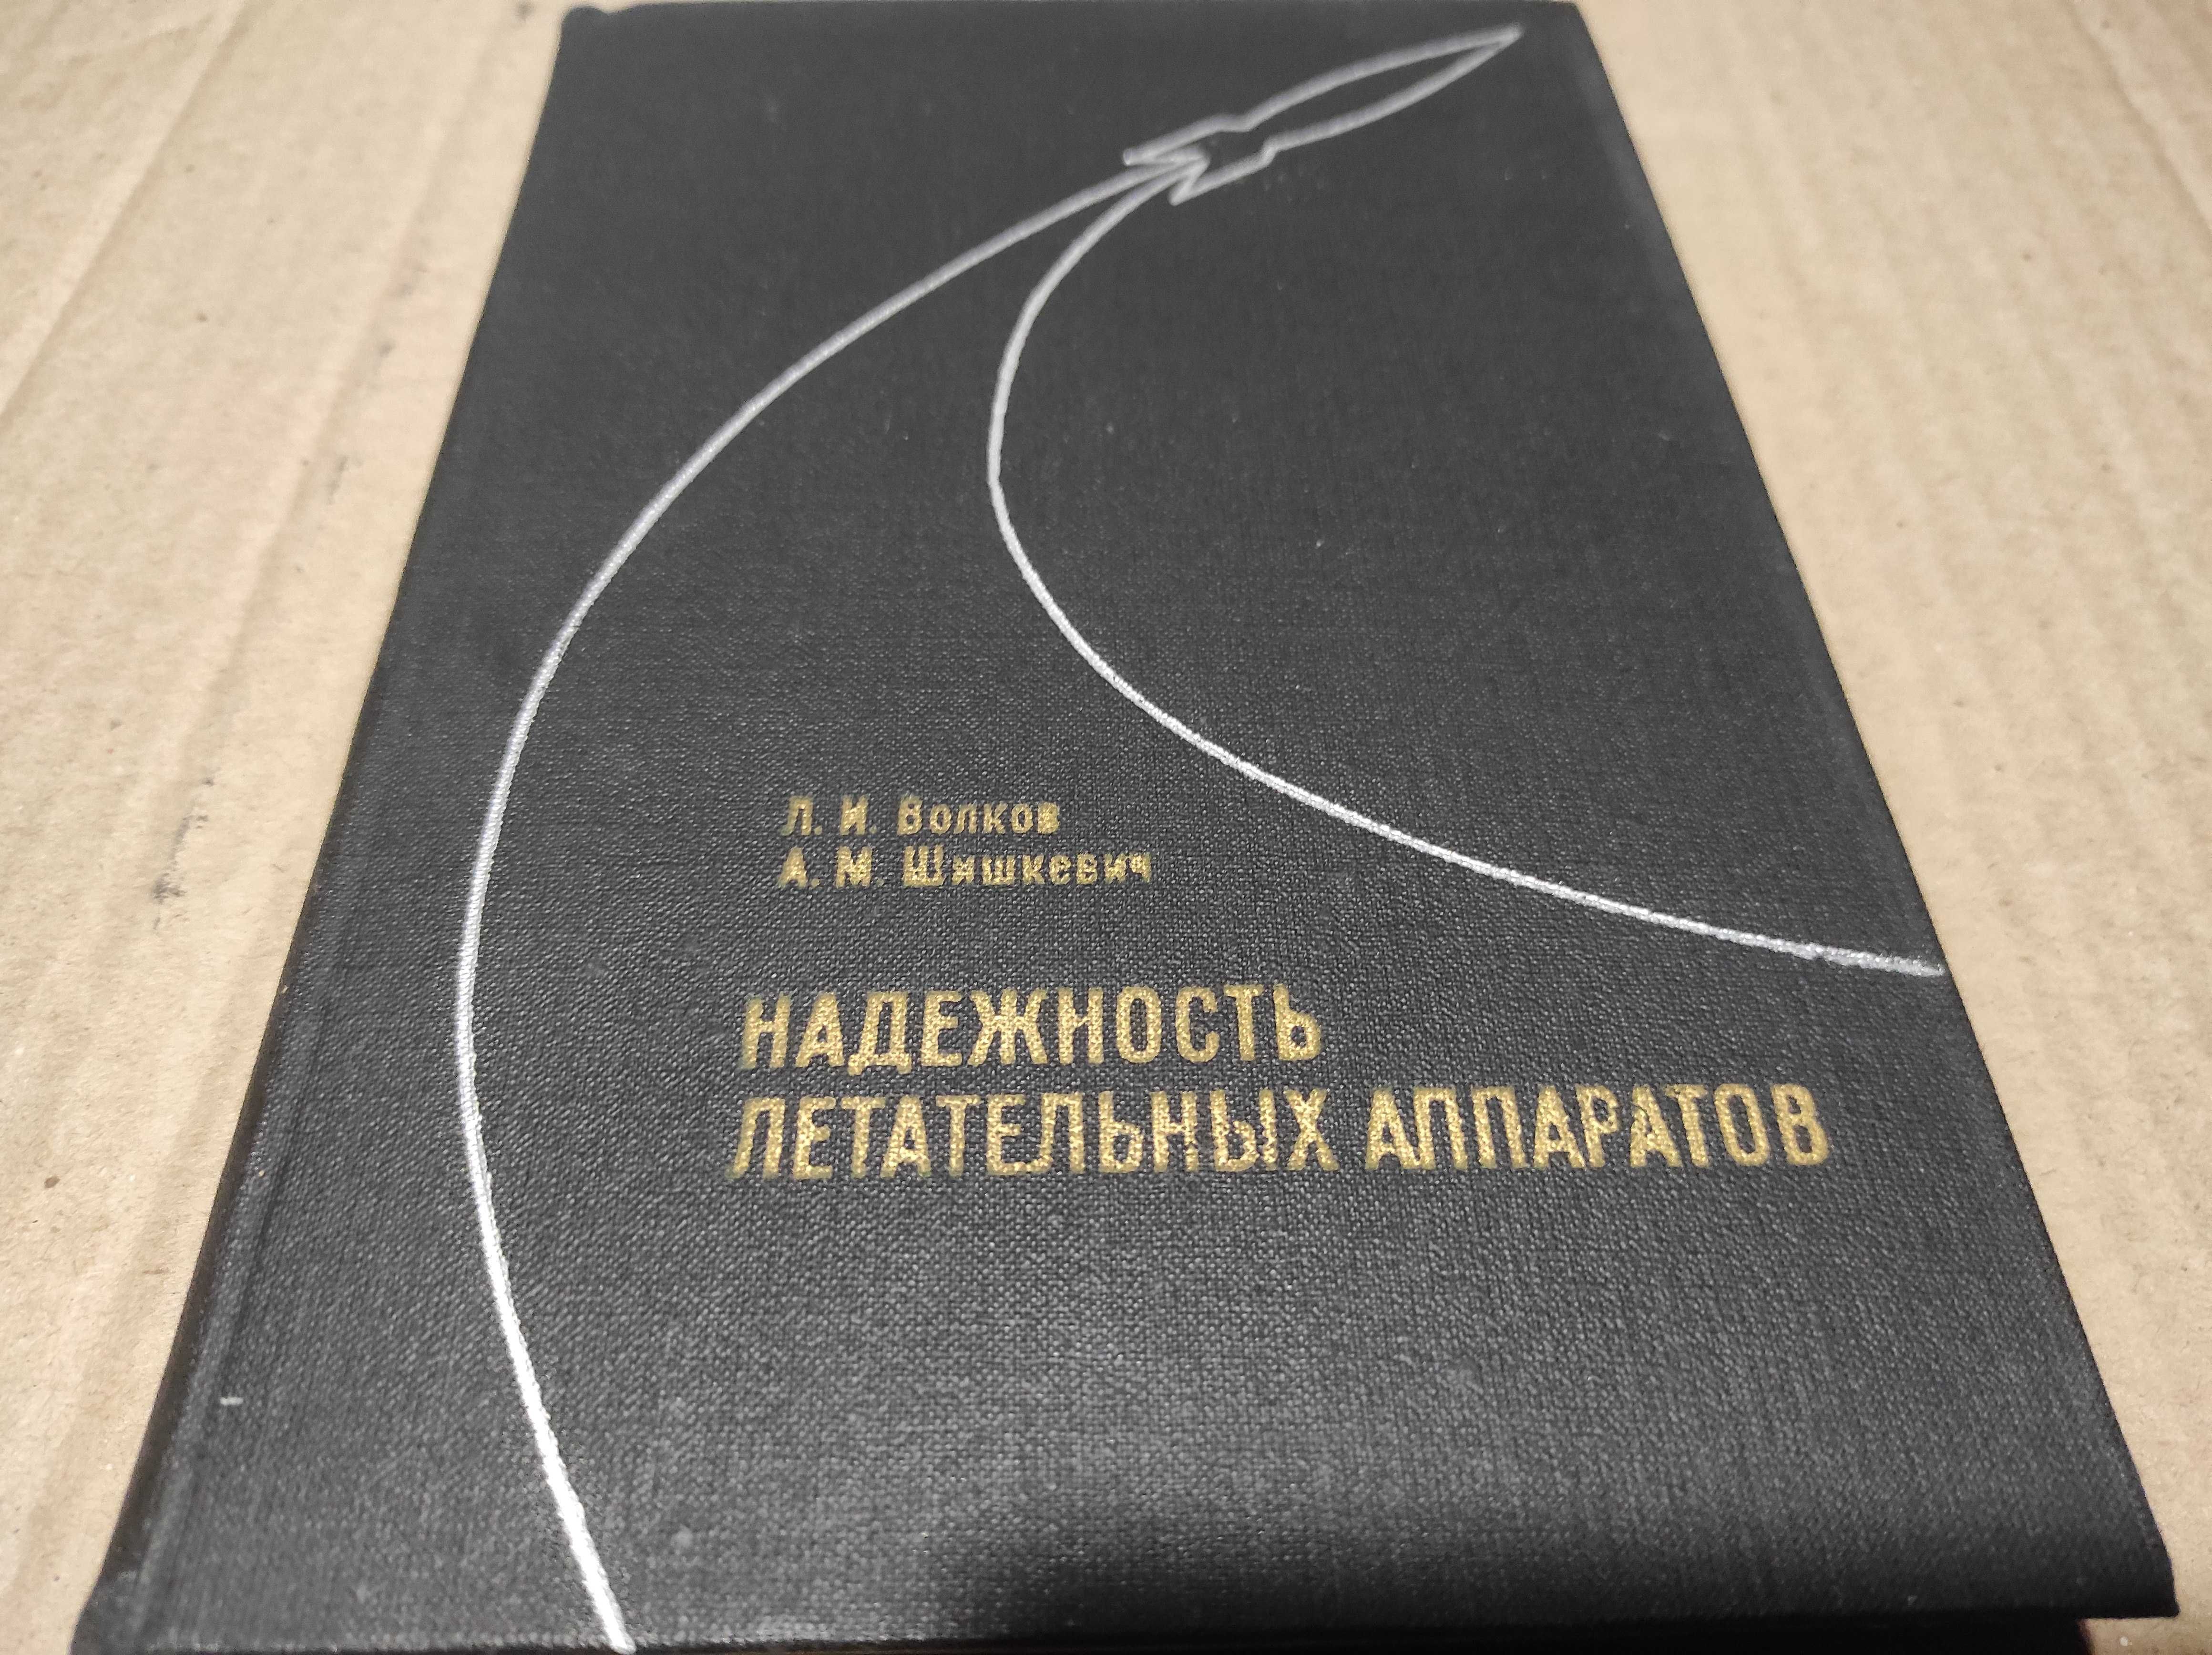 Книга "Надежность летательных аппаратов" Волков, Шишкевич 1975 г.